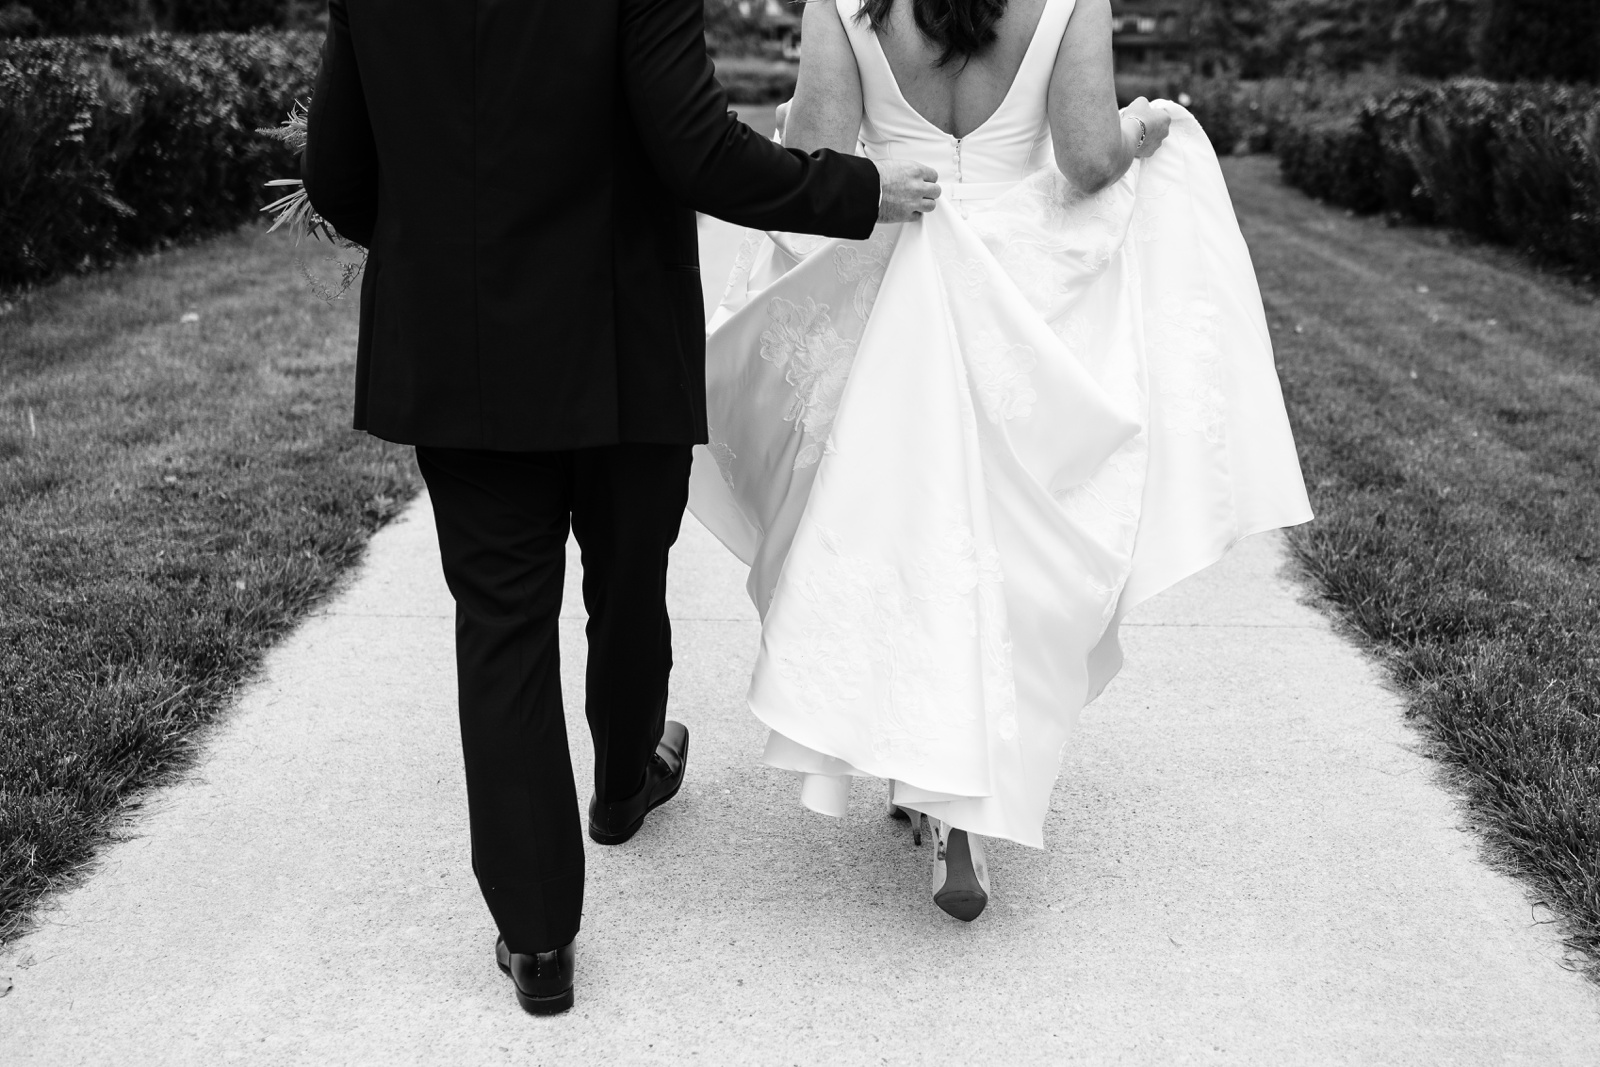 Feet of groom and bride walking